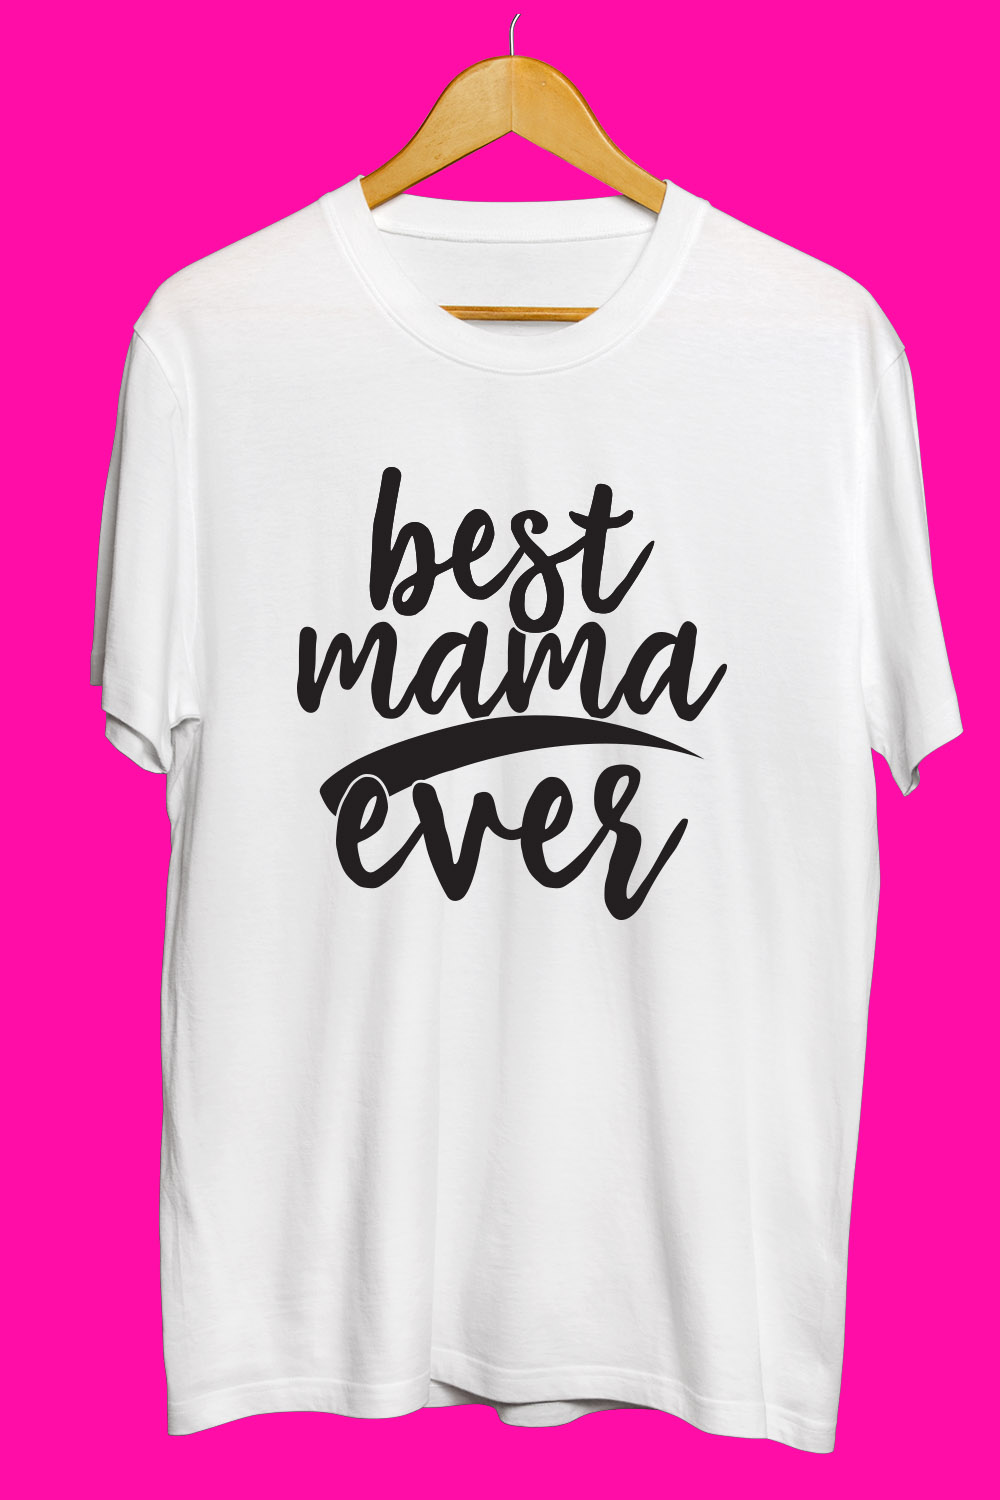 Mama T Shirt Designs Bundle pinterest preview image.